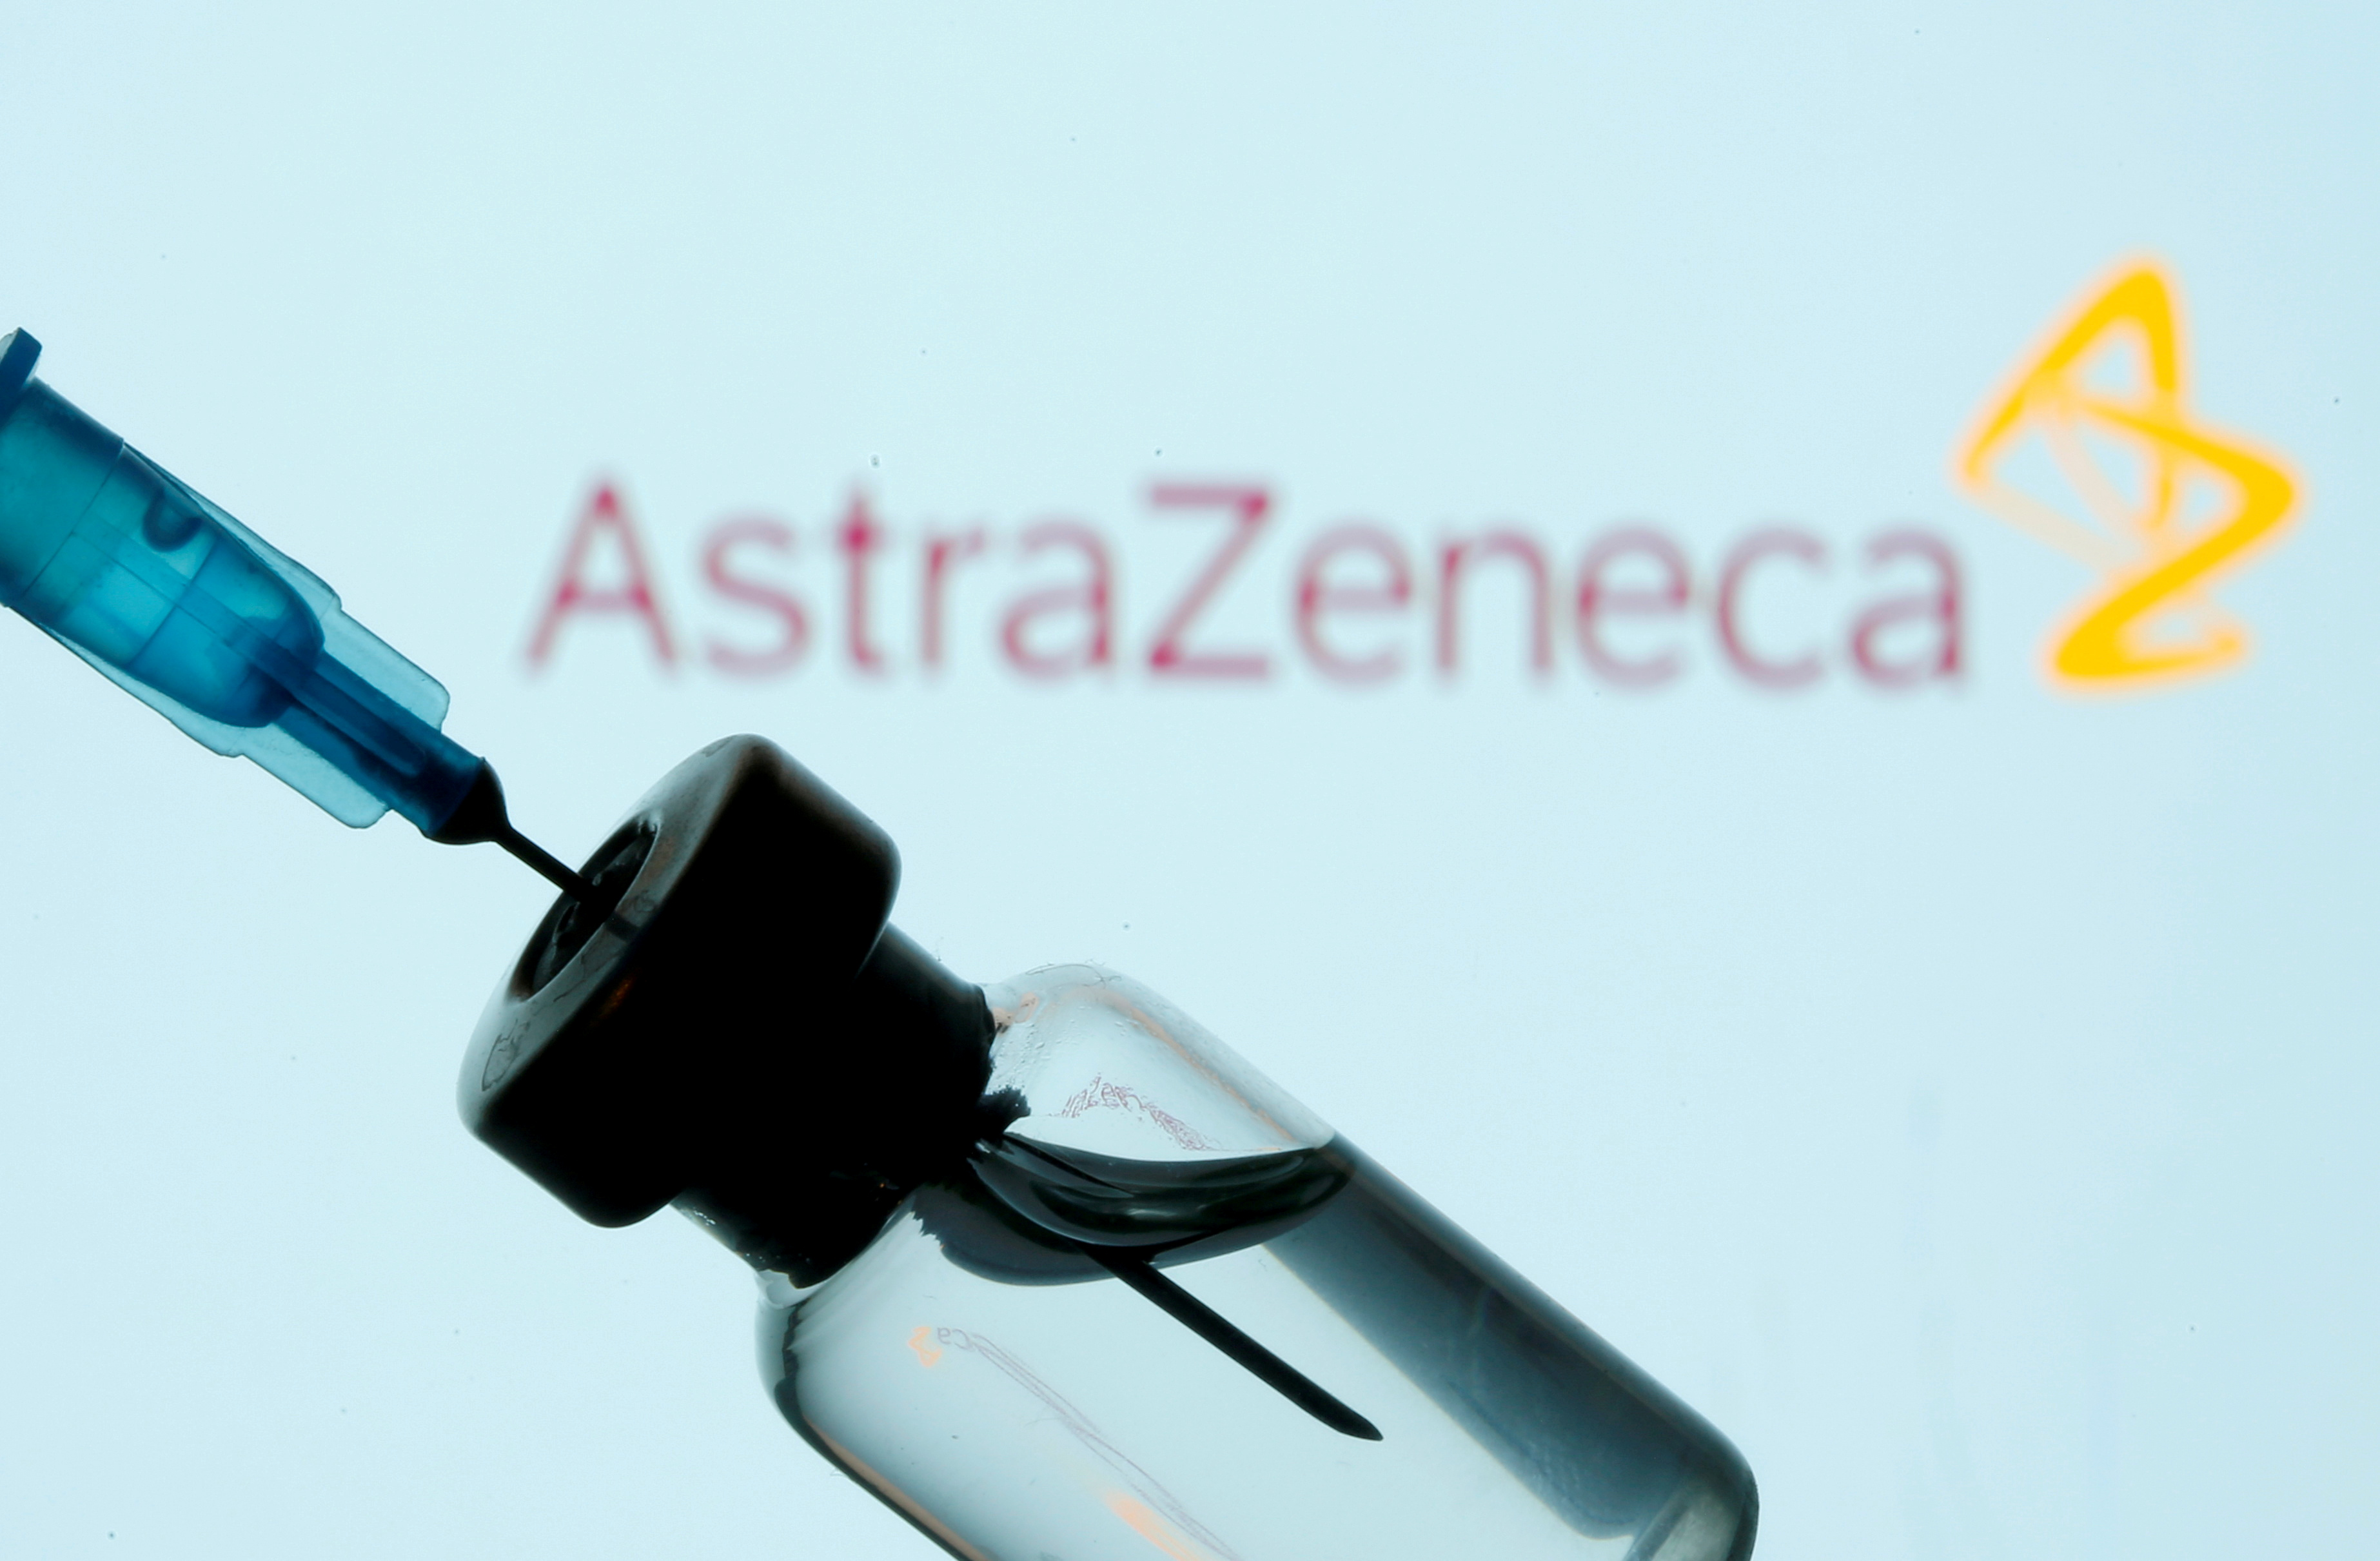 La vacuna de AstraZeneca también es contemplada para ser adquirida por el gobierno local (Foto: Reuters / Dado Ruvic)